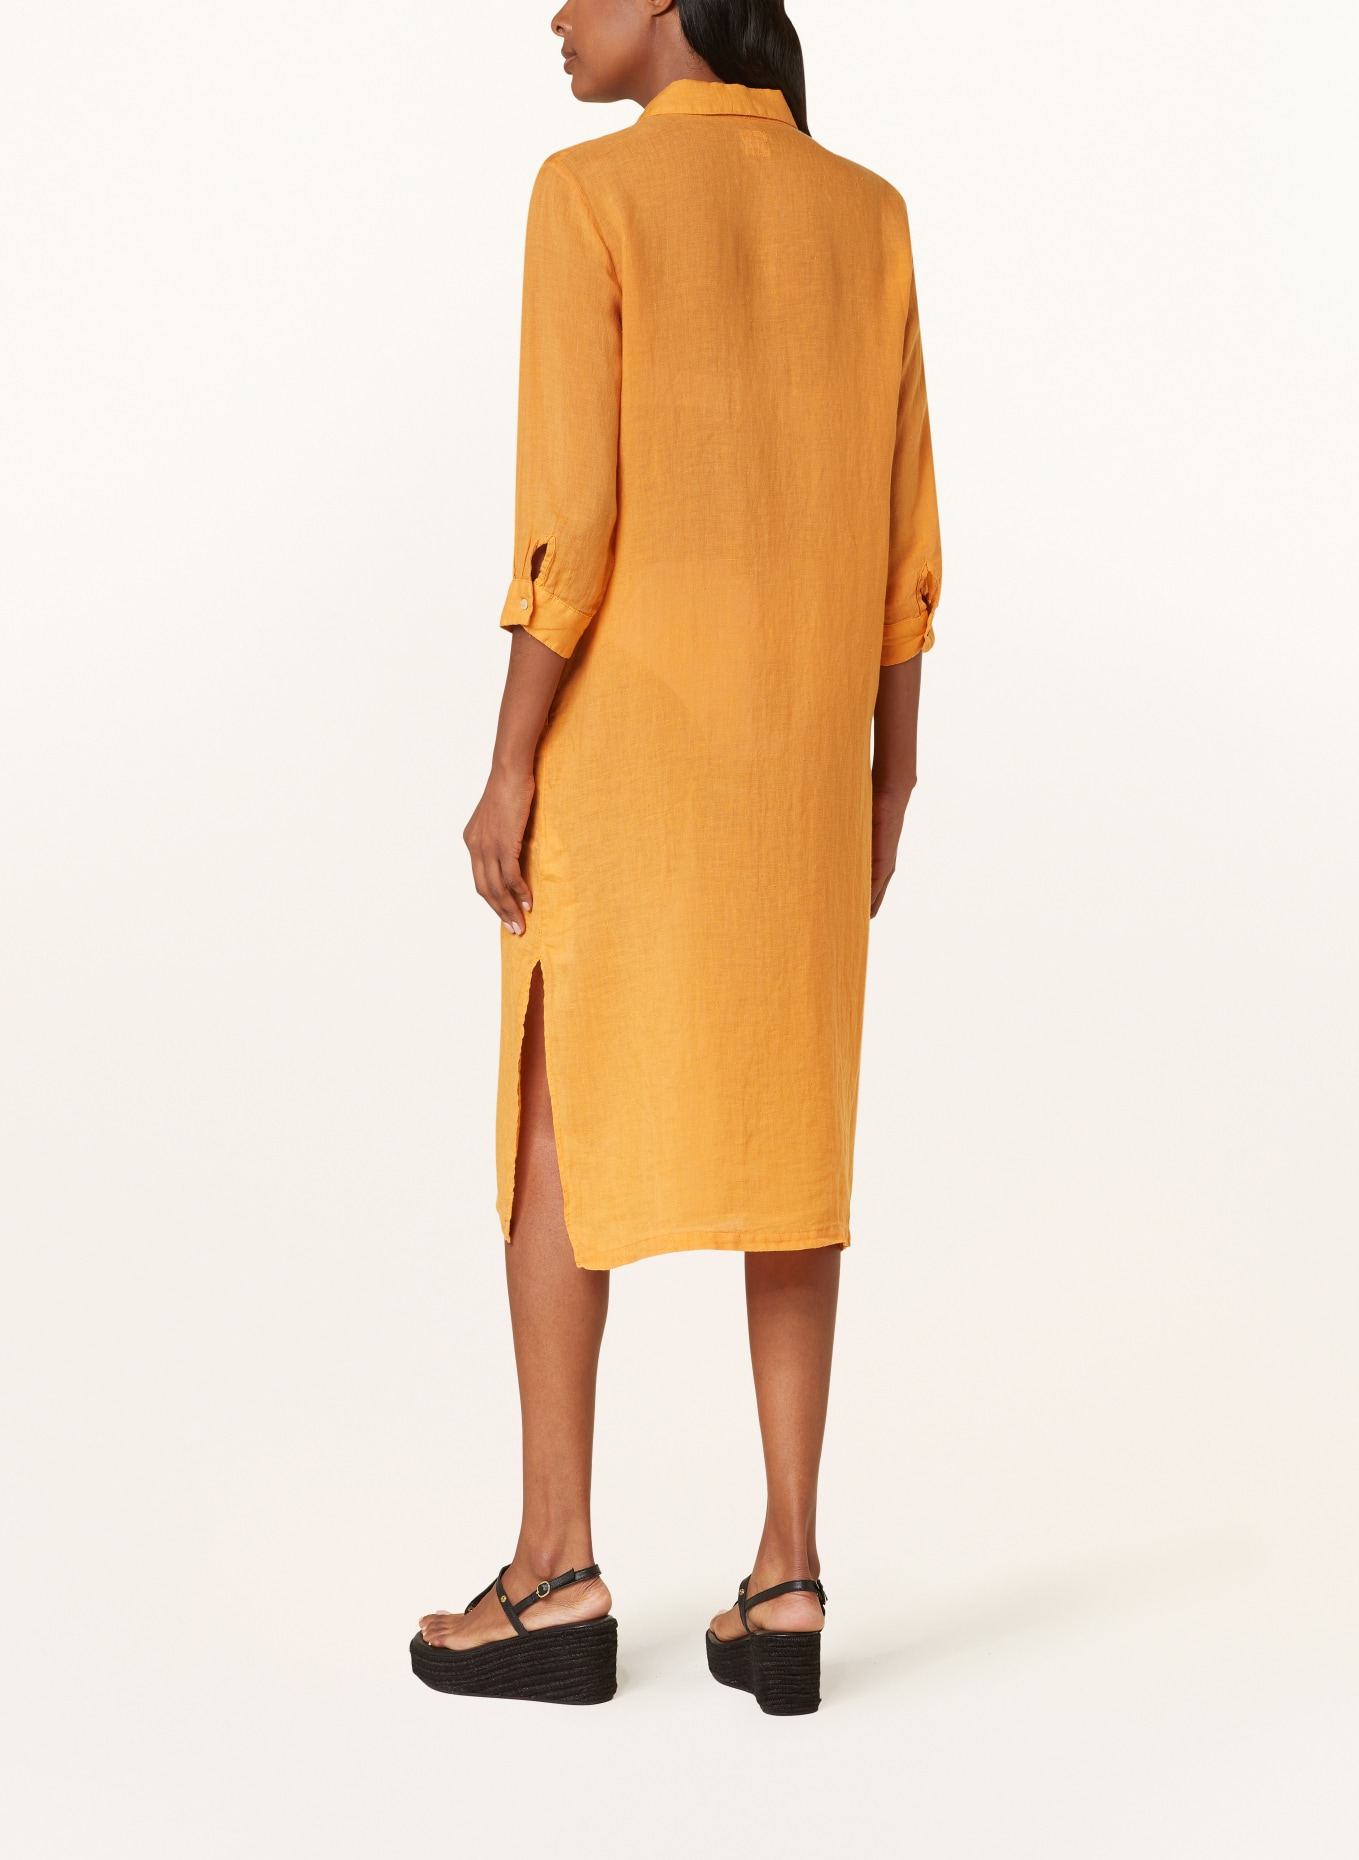 120%lino Beach dress made of linen, Color: ORANGE (Image 3)